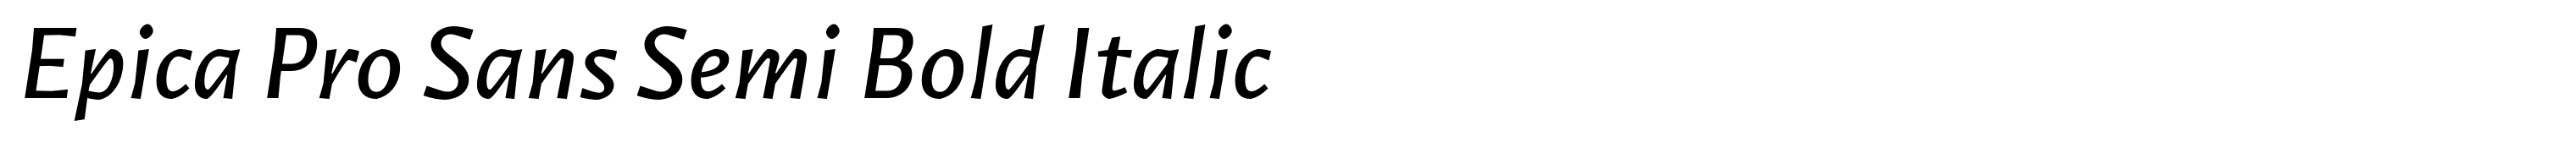 Epica Pro Sans Semi Bold Italic